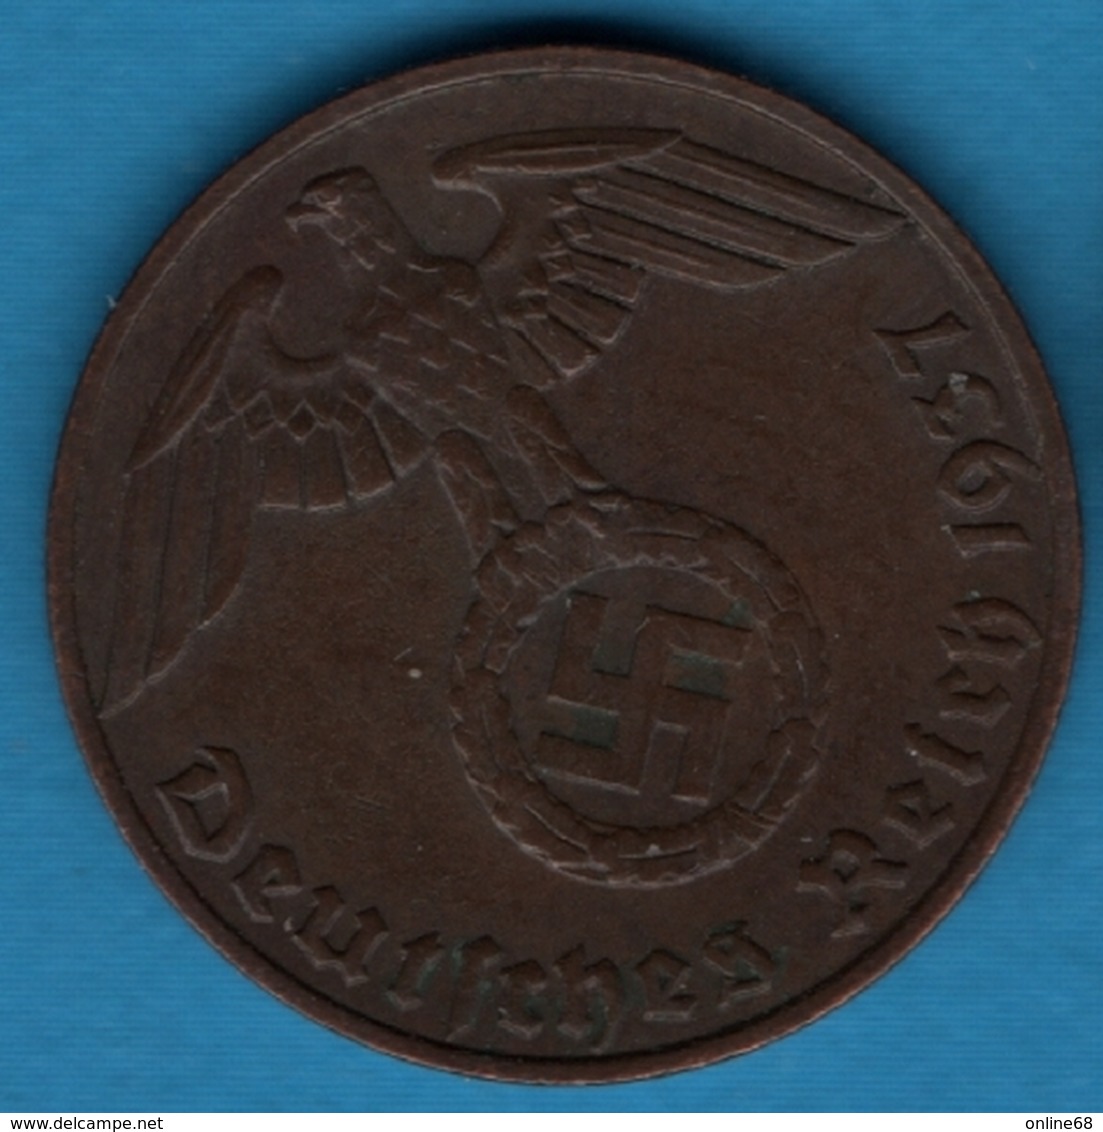 DEUTSCHES REICH 1 REICHSPFENNIG  1937 E KM# 89 (svastika) - 1 Reichspfennig